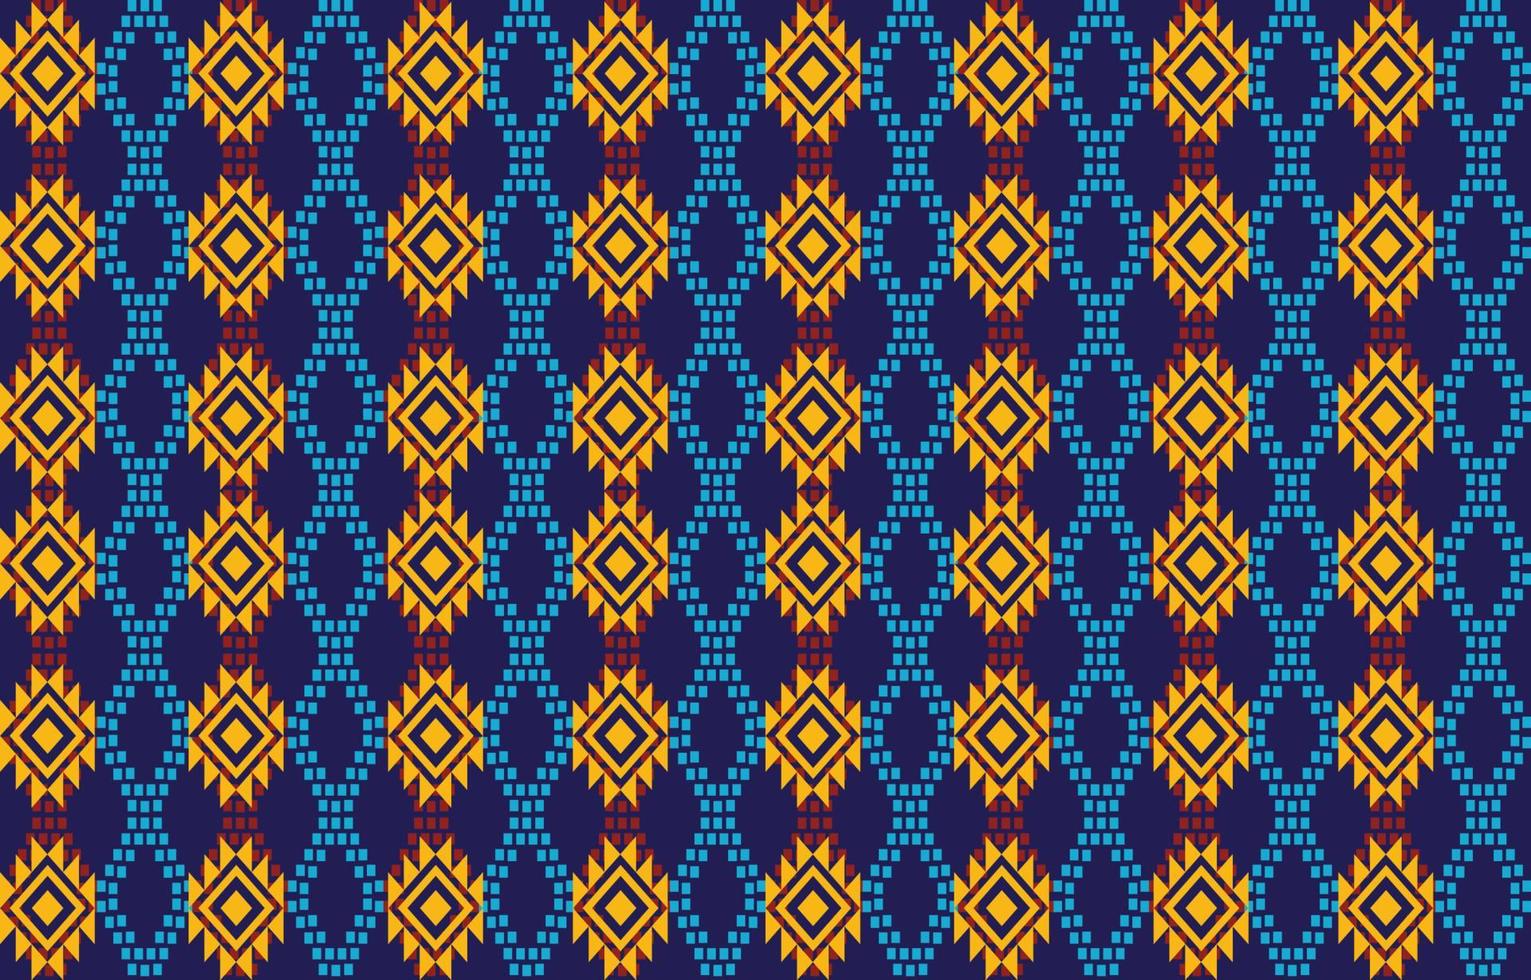 mörkblå etnisk abstrakt konst. sömlösa mönster i tribal, folklig broderi och mexikansk stil. Aztekisk geometrisk konst prydnadstryck. design för matta, tapeter, kläder, omslag, tyg. vektor